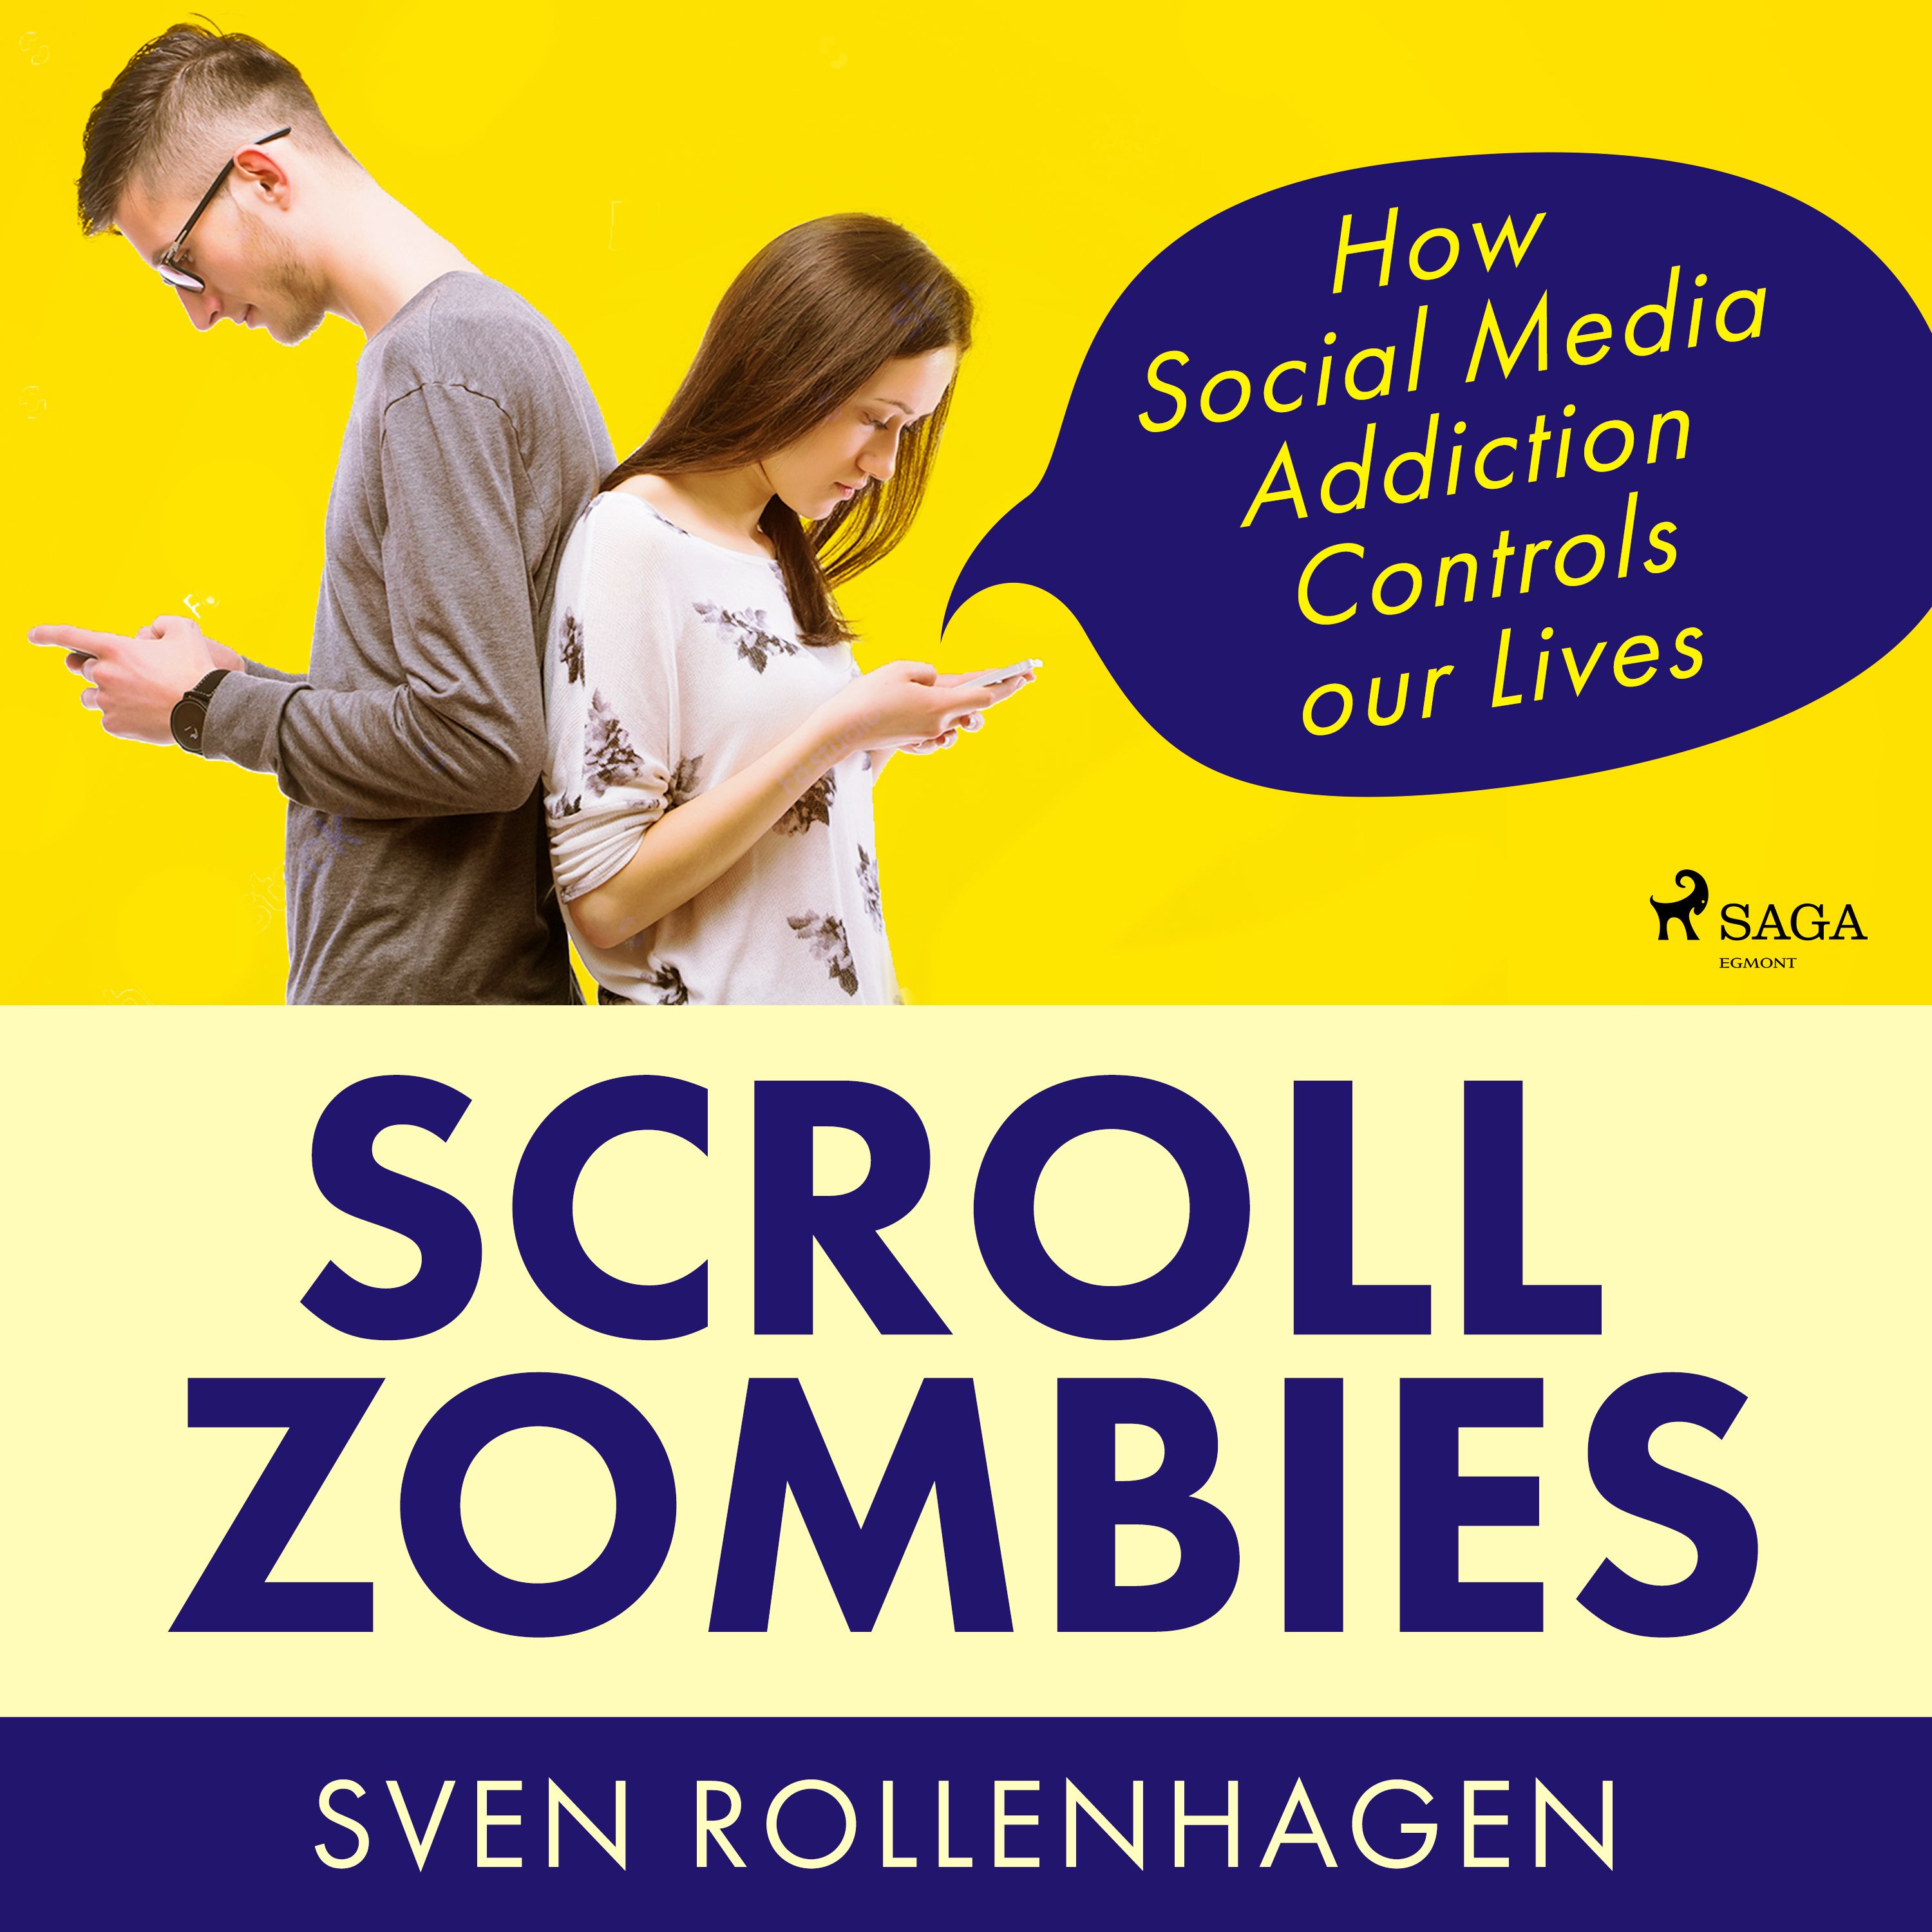 Scroll Zombies: How Social Media Addiction Controls our Lives, ljudbok av Sven Rollenhagen